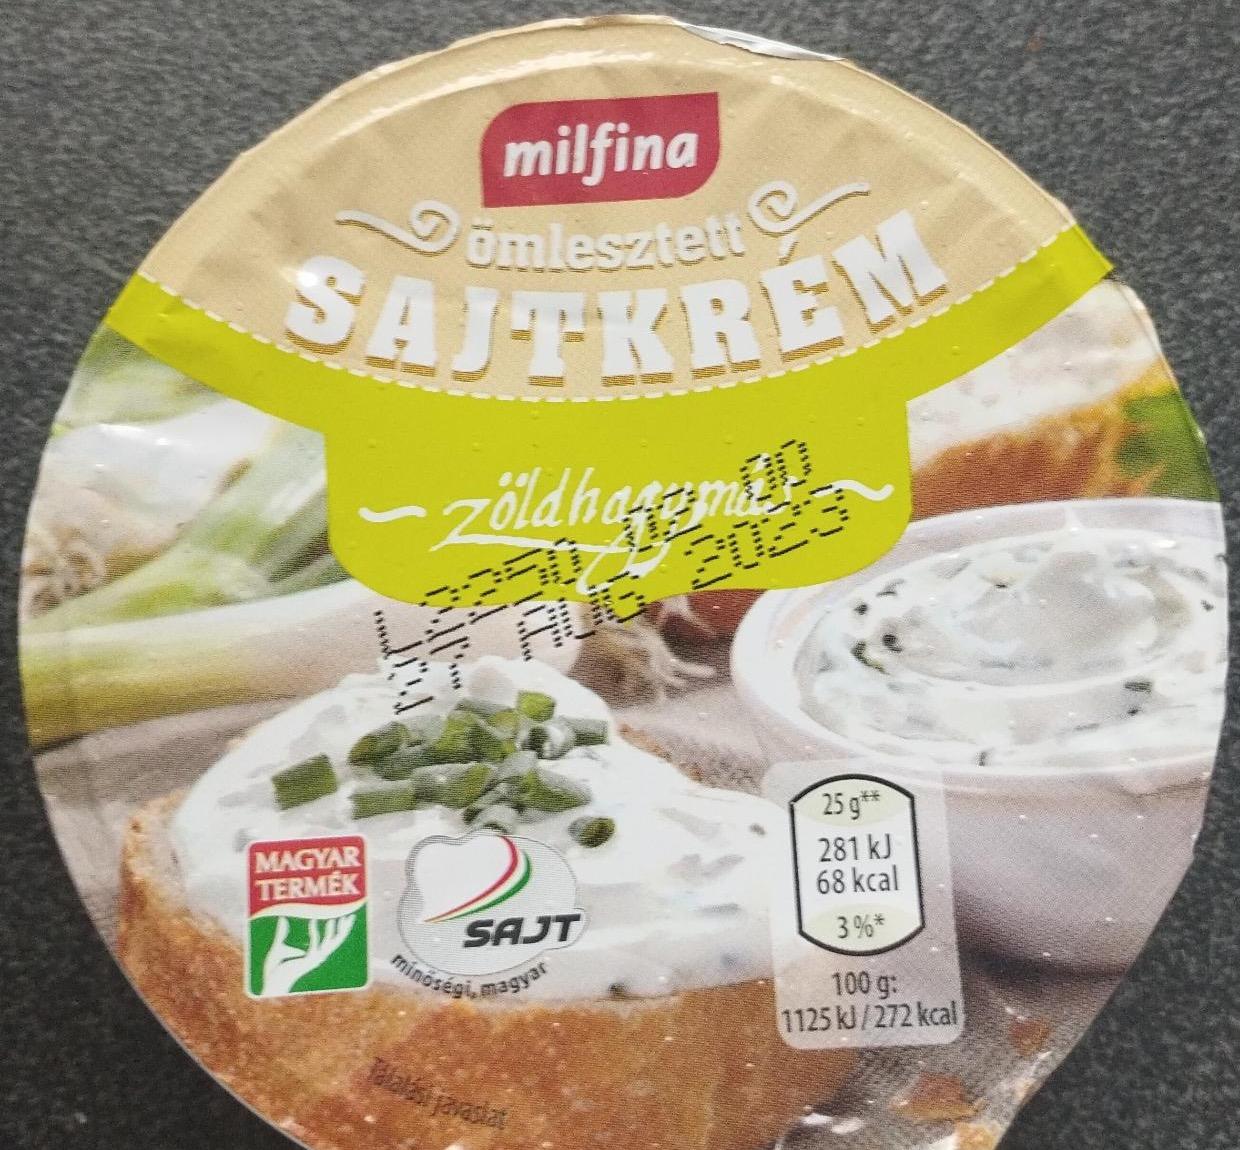 Képek - Ömlesztett sajtkrém zöldhagymás Milfina